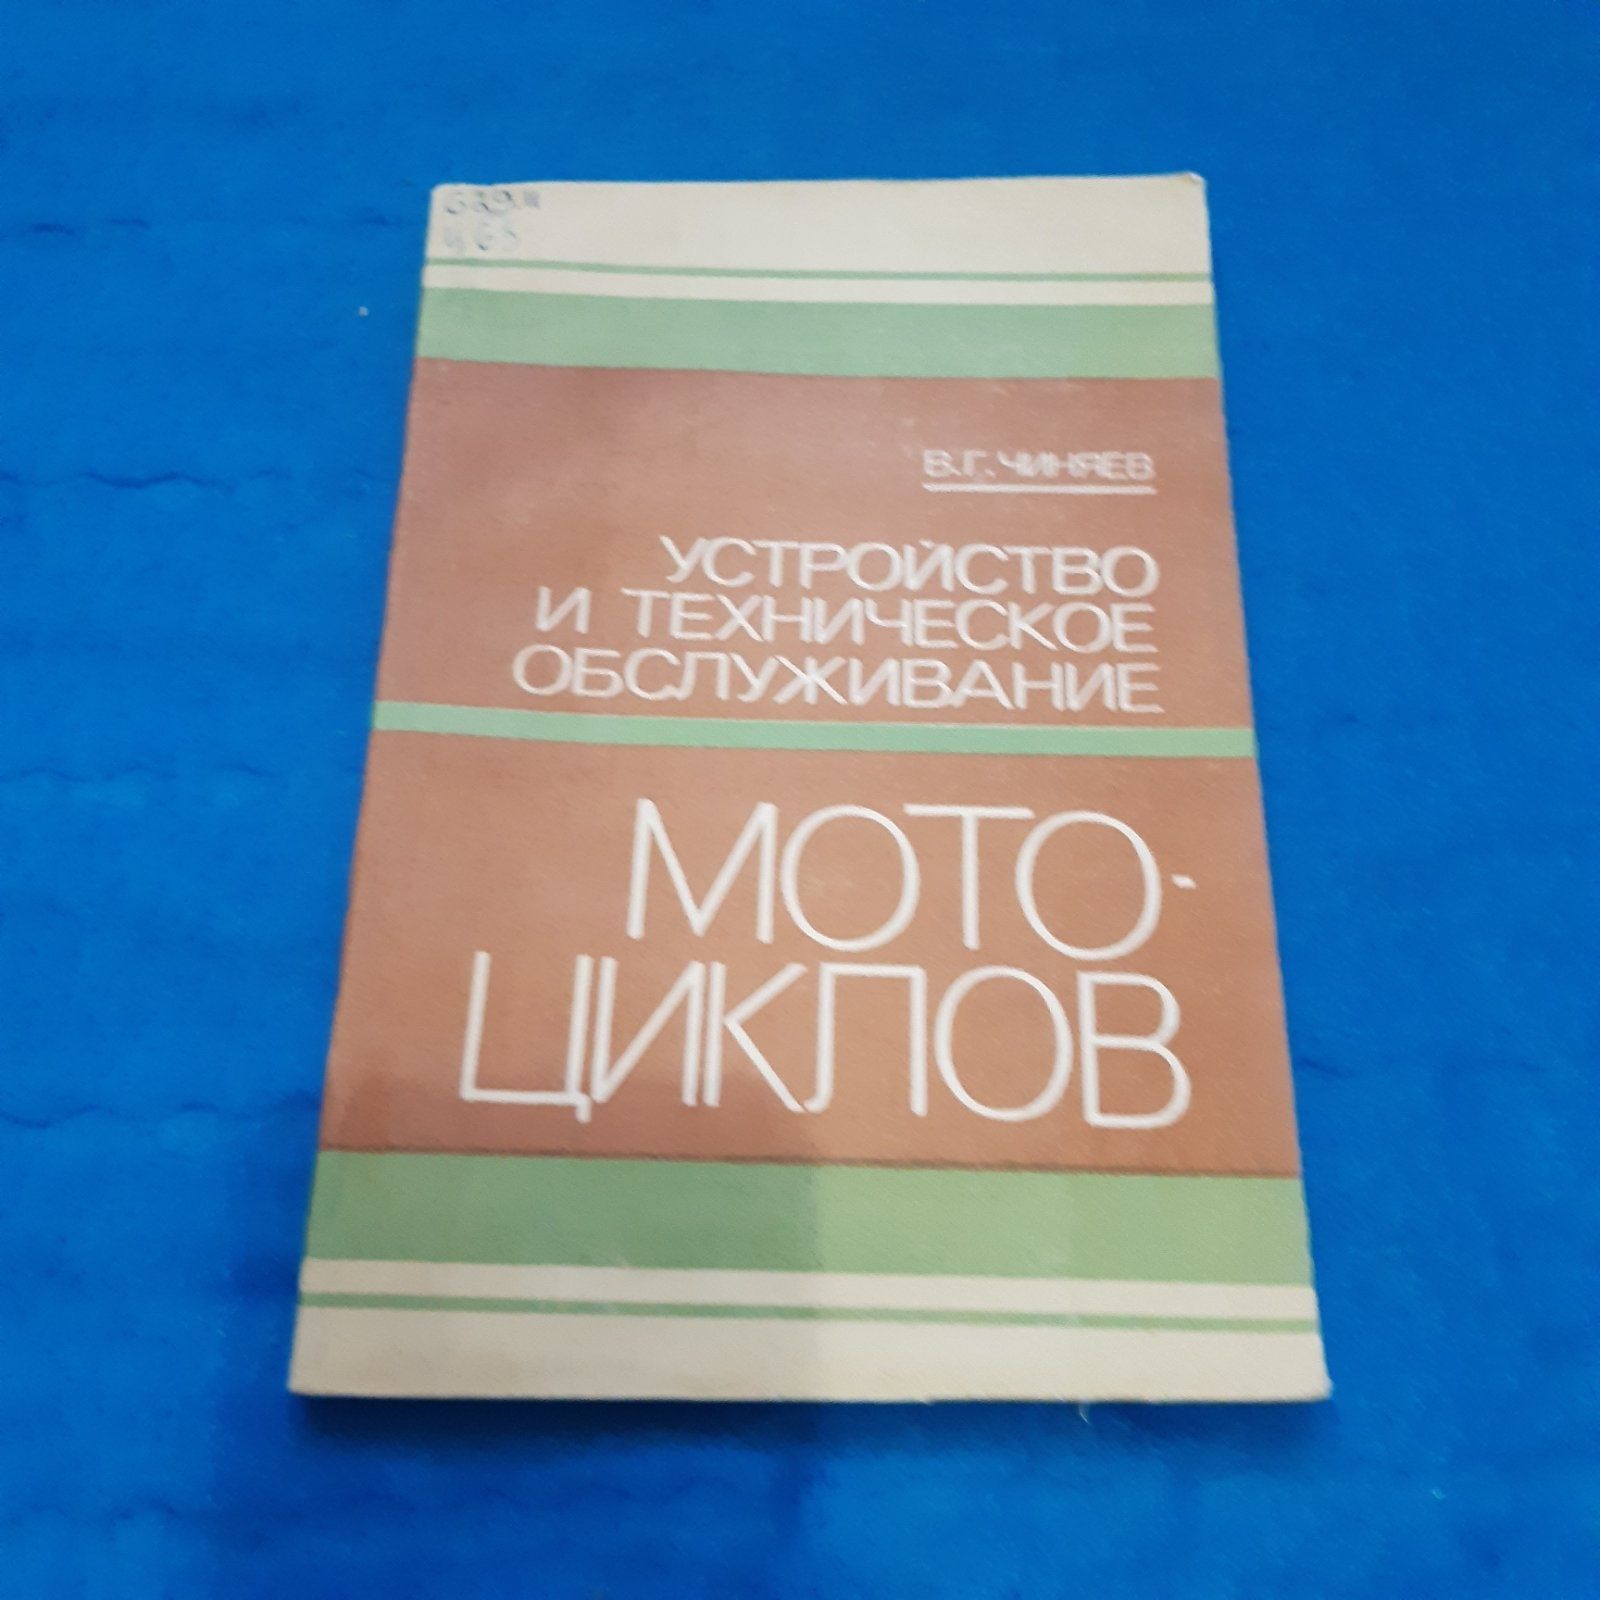 Ретро мото книга "Устройство и техническое обслуживание мотоциклов"